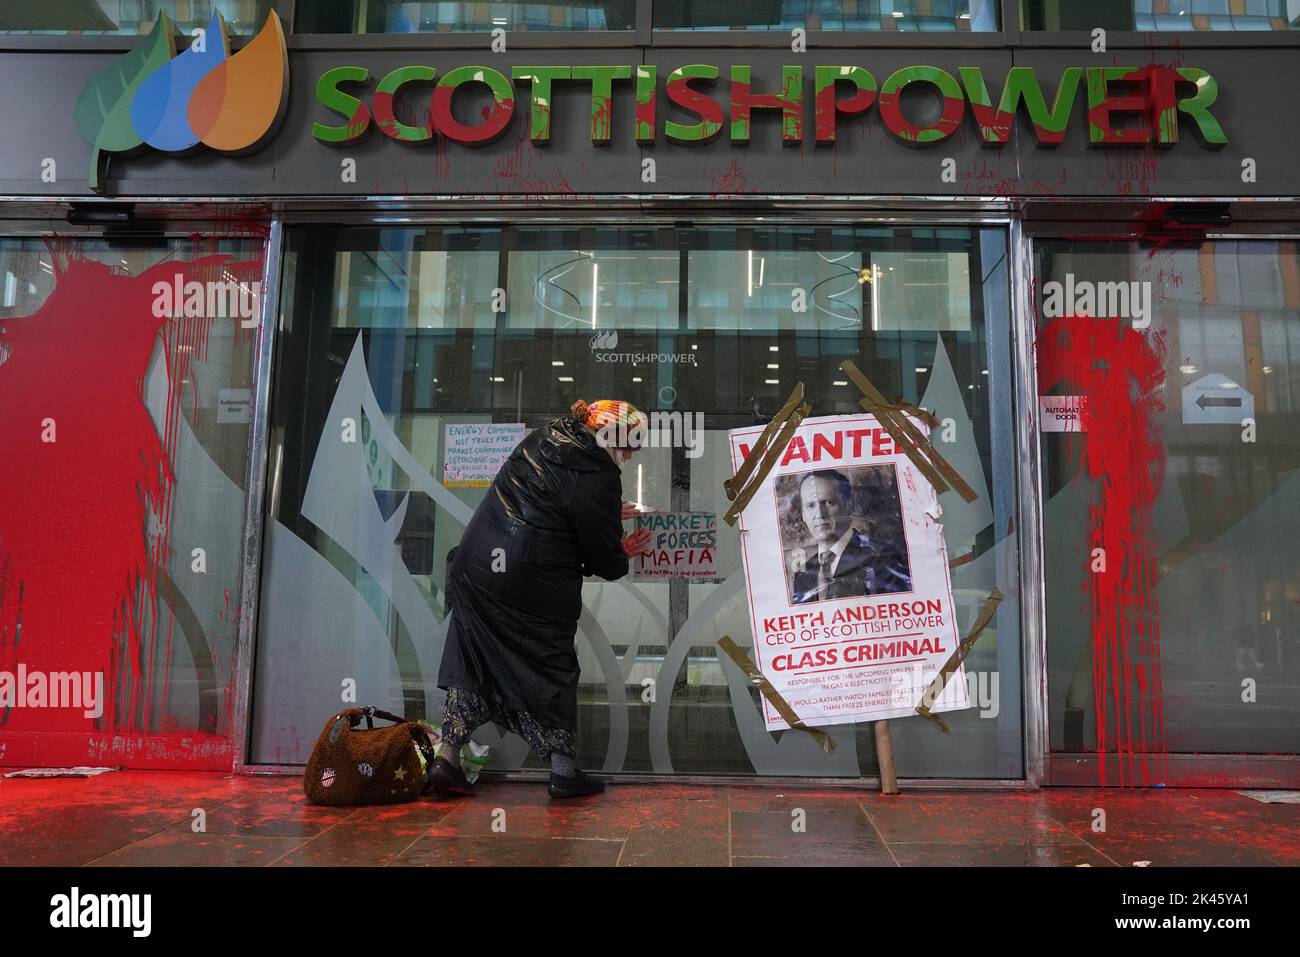 Vernice rossa spruzzata all'ingresso della sede centrale della Scottish Power a Glasgow a seguito di una dimostrazione energetica a prezzi accessibili. Data immagine: Venerdì 30 settembre 2022. Foto Stock